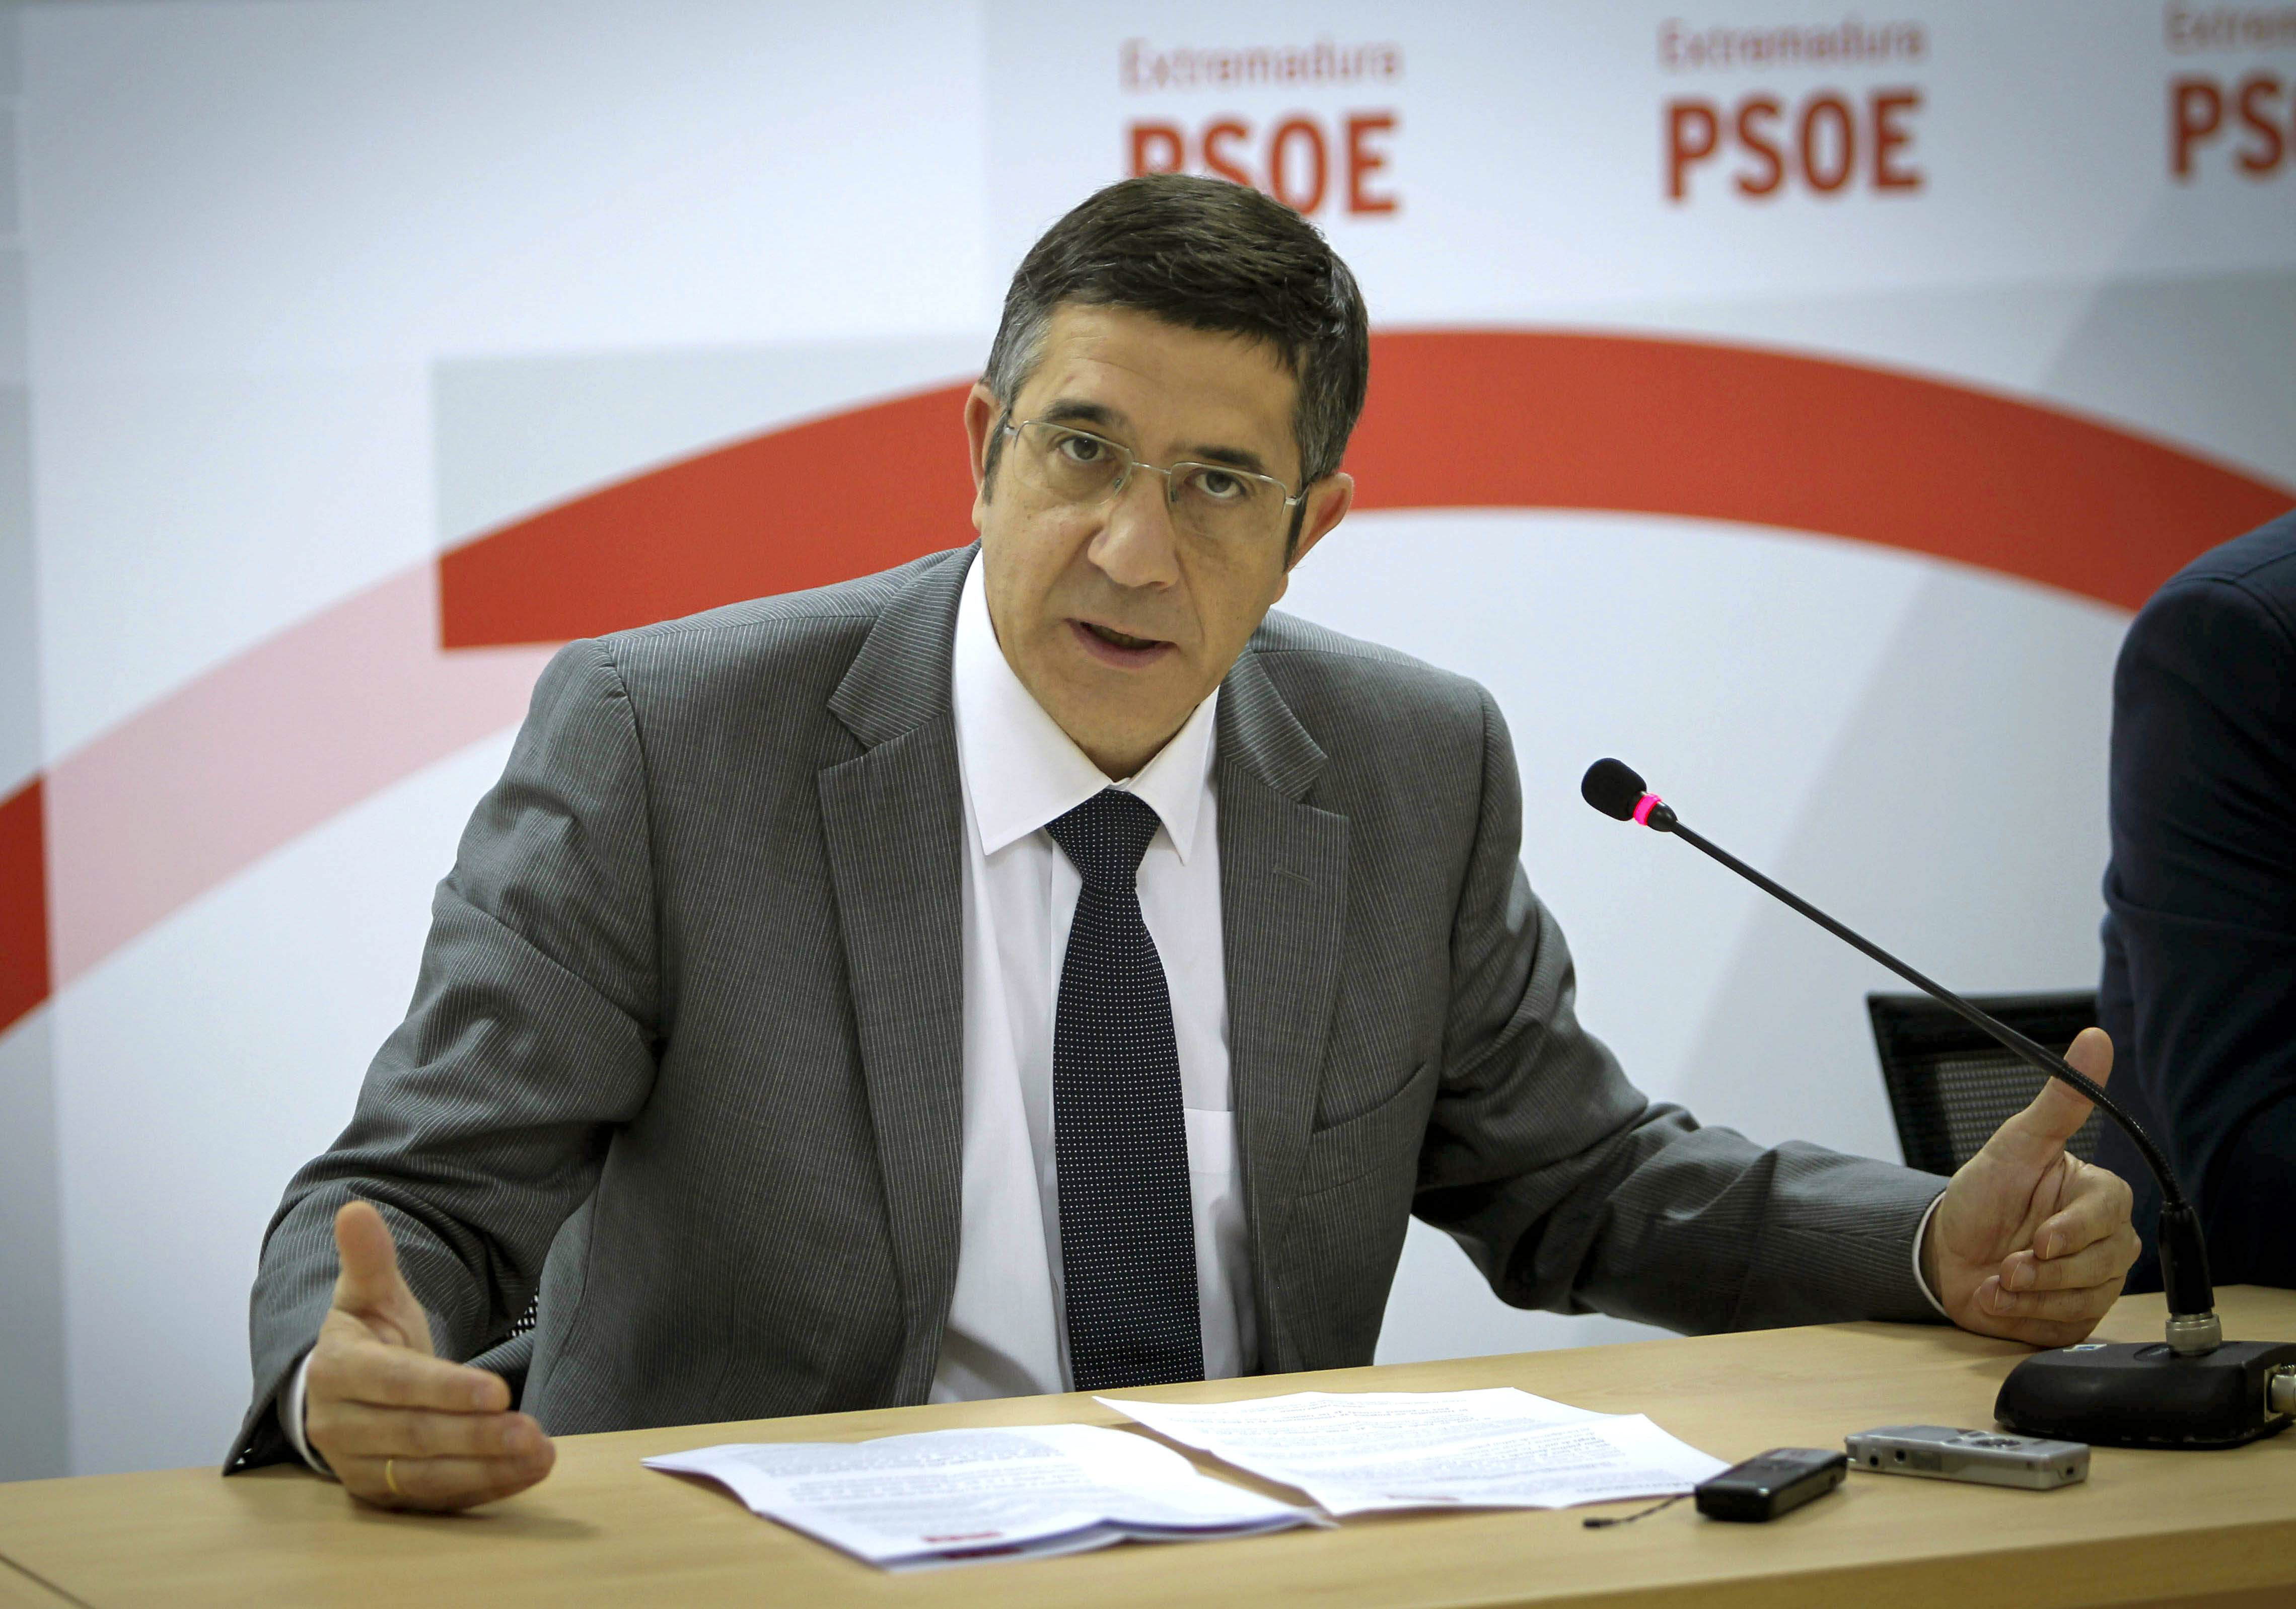 Patxi López expone hoy en Madrid su visión sobre el PSOE